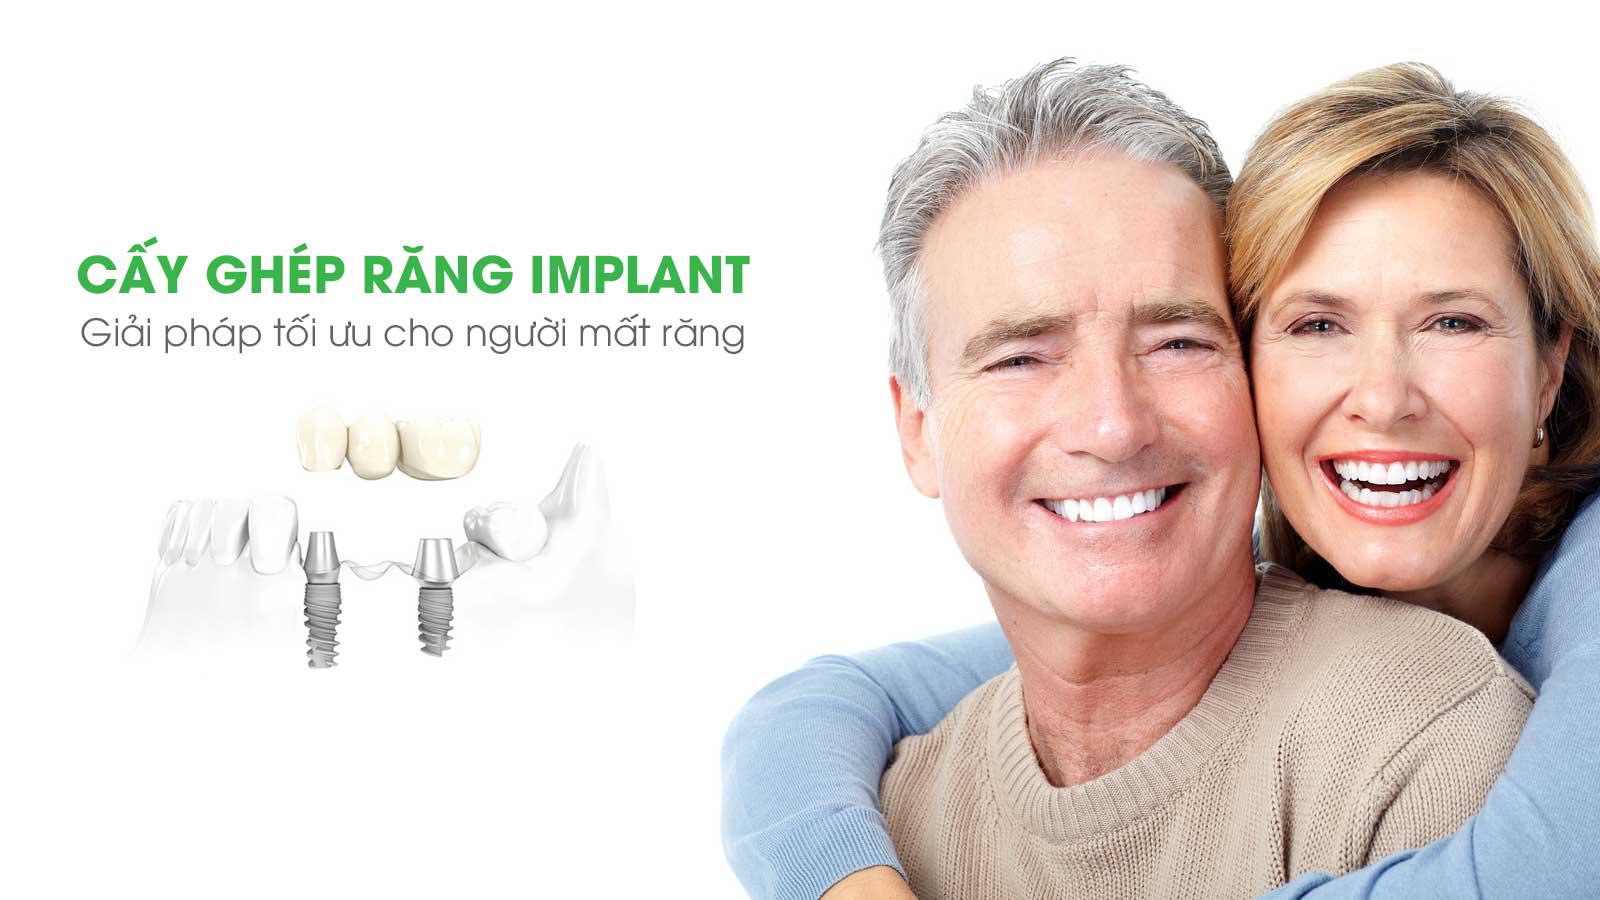 Cấy ghép răng implant ở đâu tốt tại Thanh Hóa ?